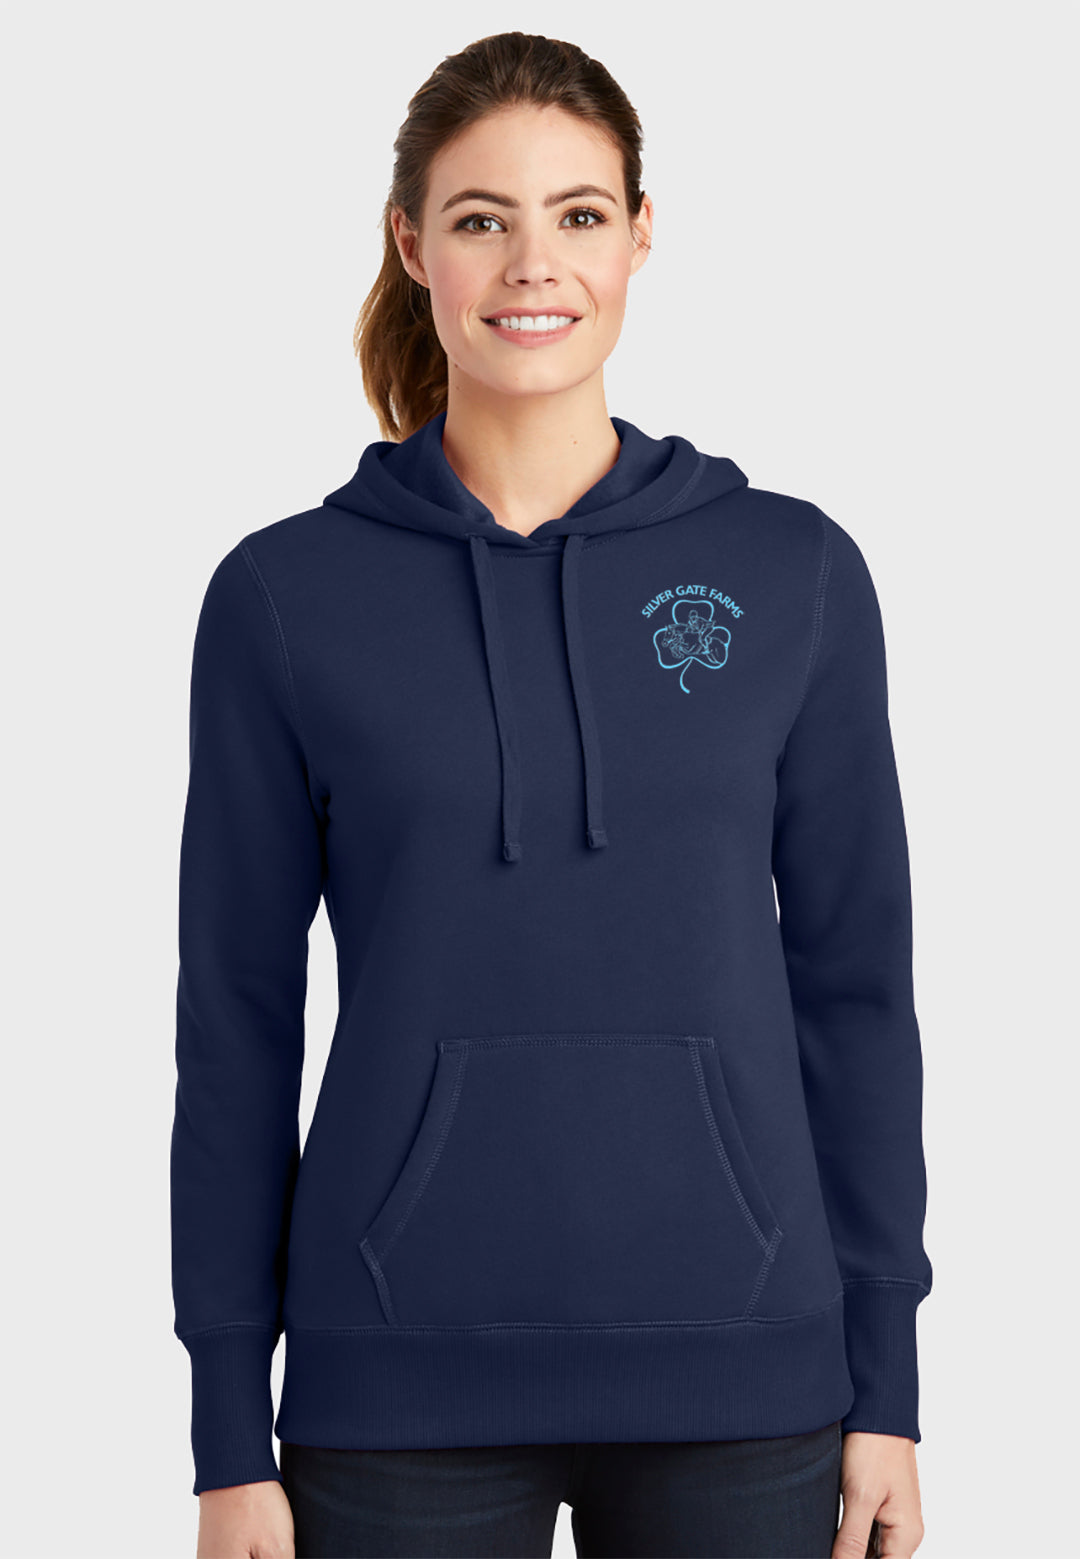 Silver Gate Farms Sport-Tek® Ladies Pullover Hooded Sweatshirt - Navy